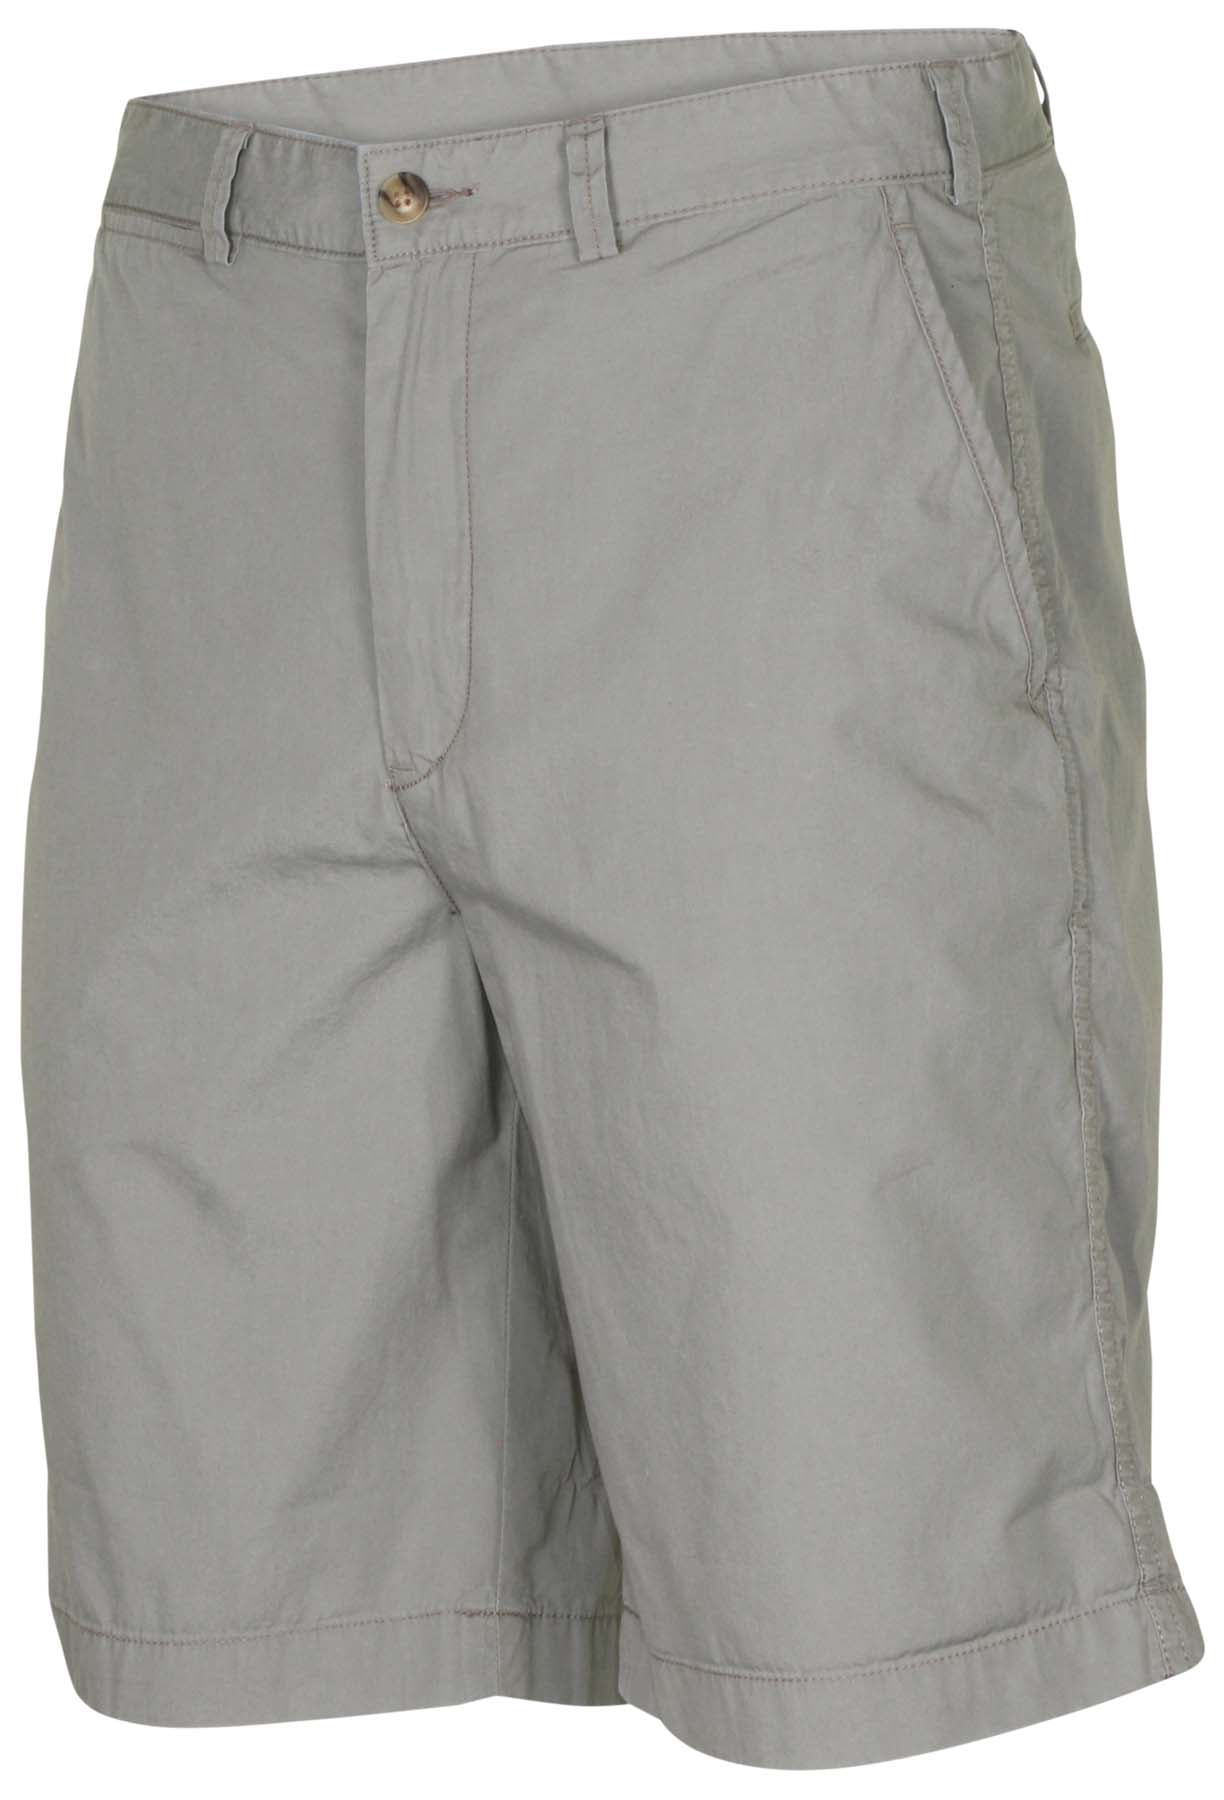 ralph lauren shorts clearance